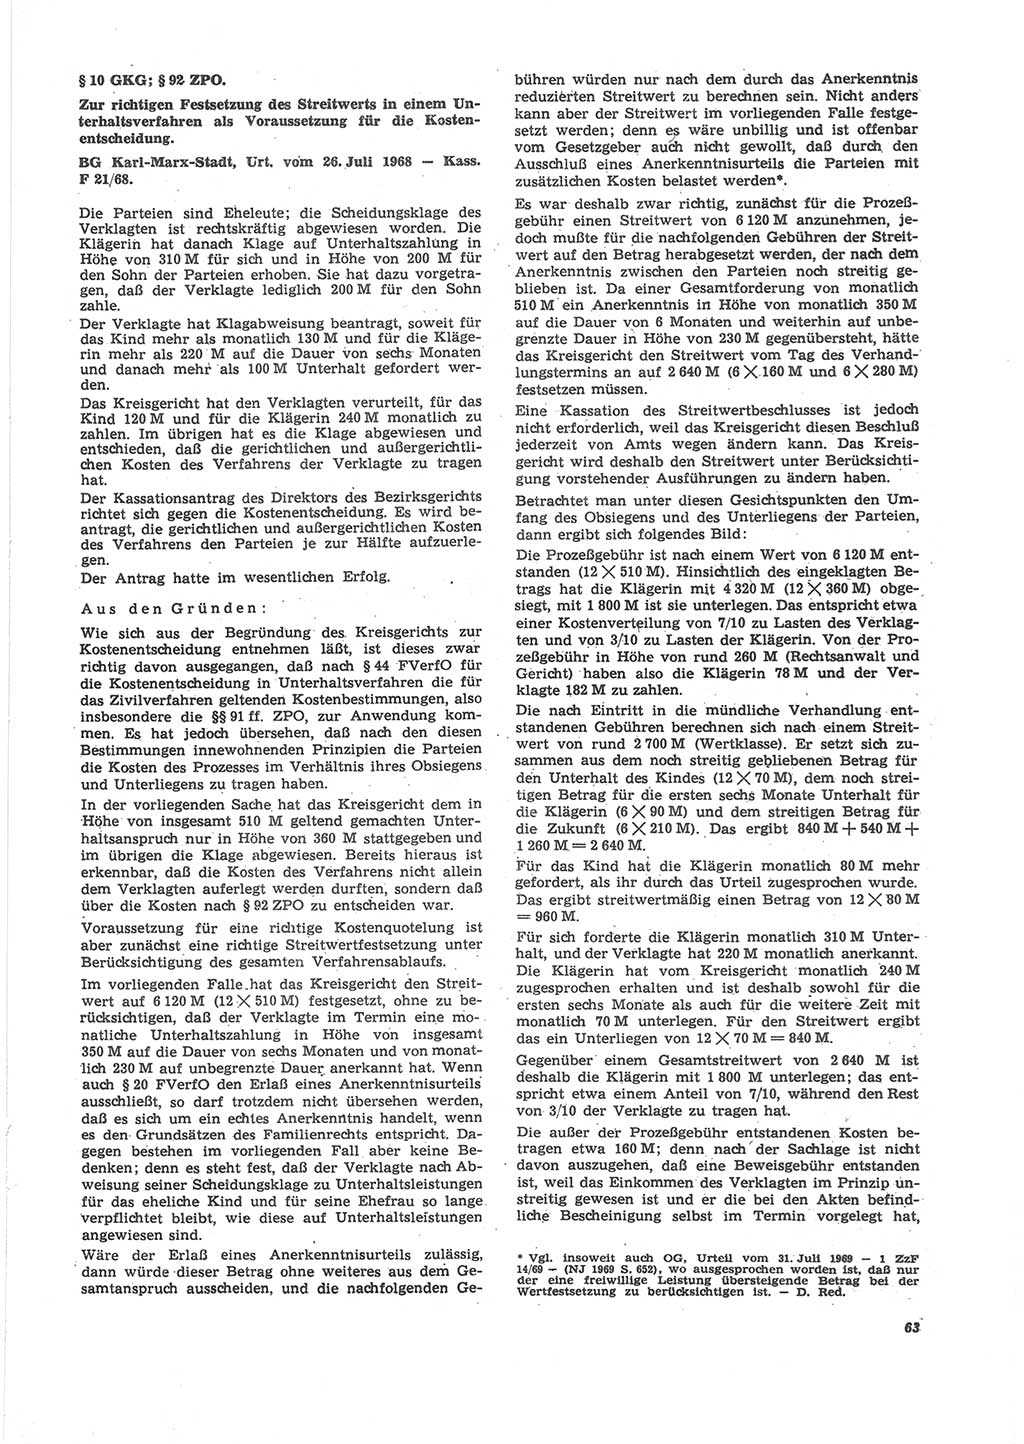 Neue Justiz (NJ), Zeitschrift für Recht und Rechtswissenschaft [Deutsche Demokratische Republik (DDR)], 24. Jahrgang 1970, Seite 63 (NJ DDR 1970, S. 63)